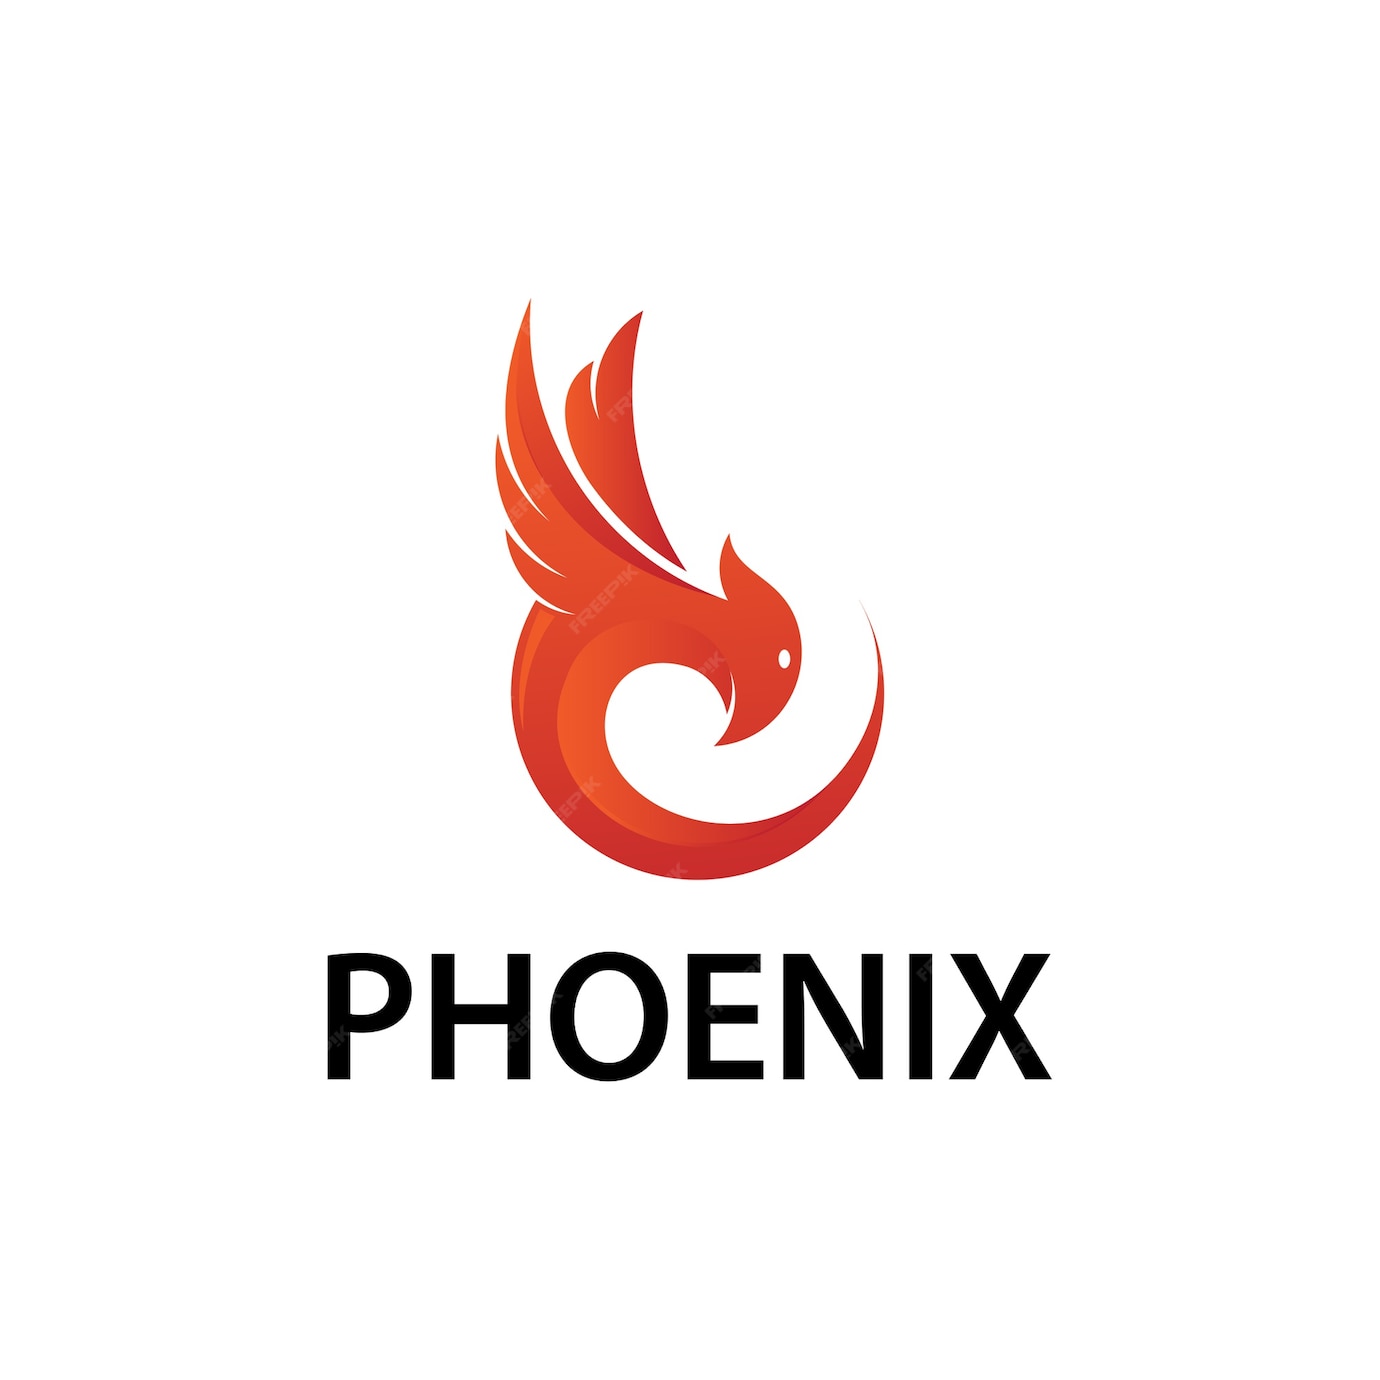 Premium Vector | Phoenix logotype